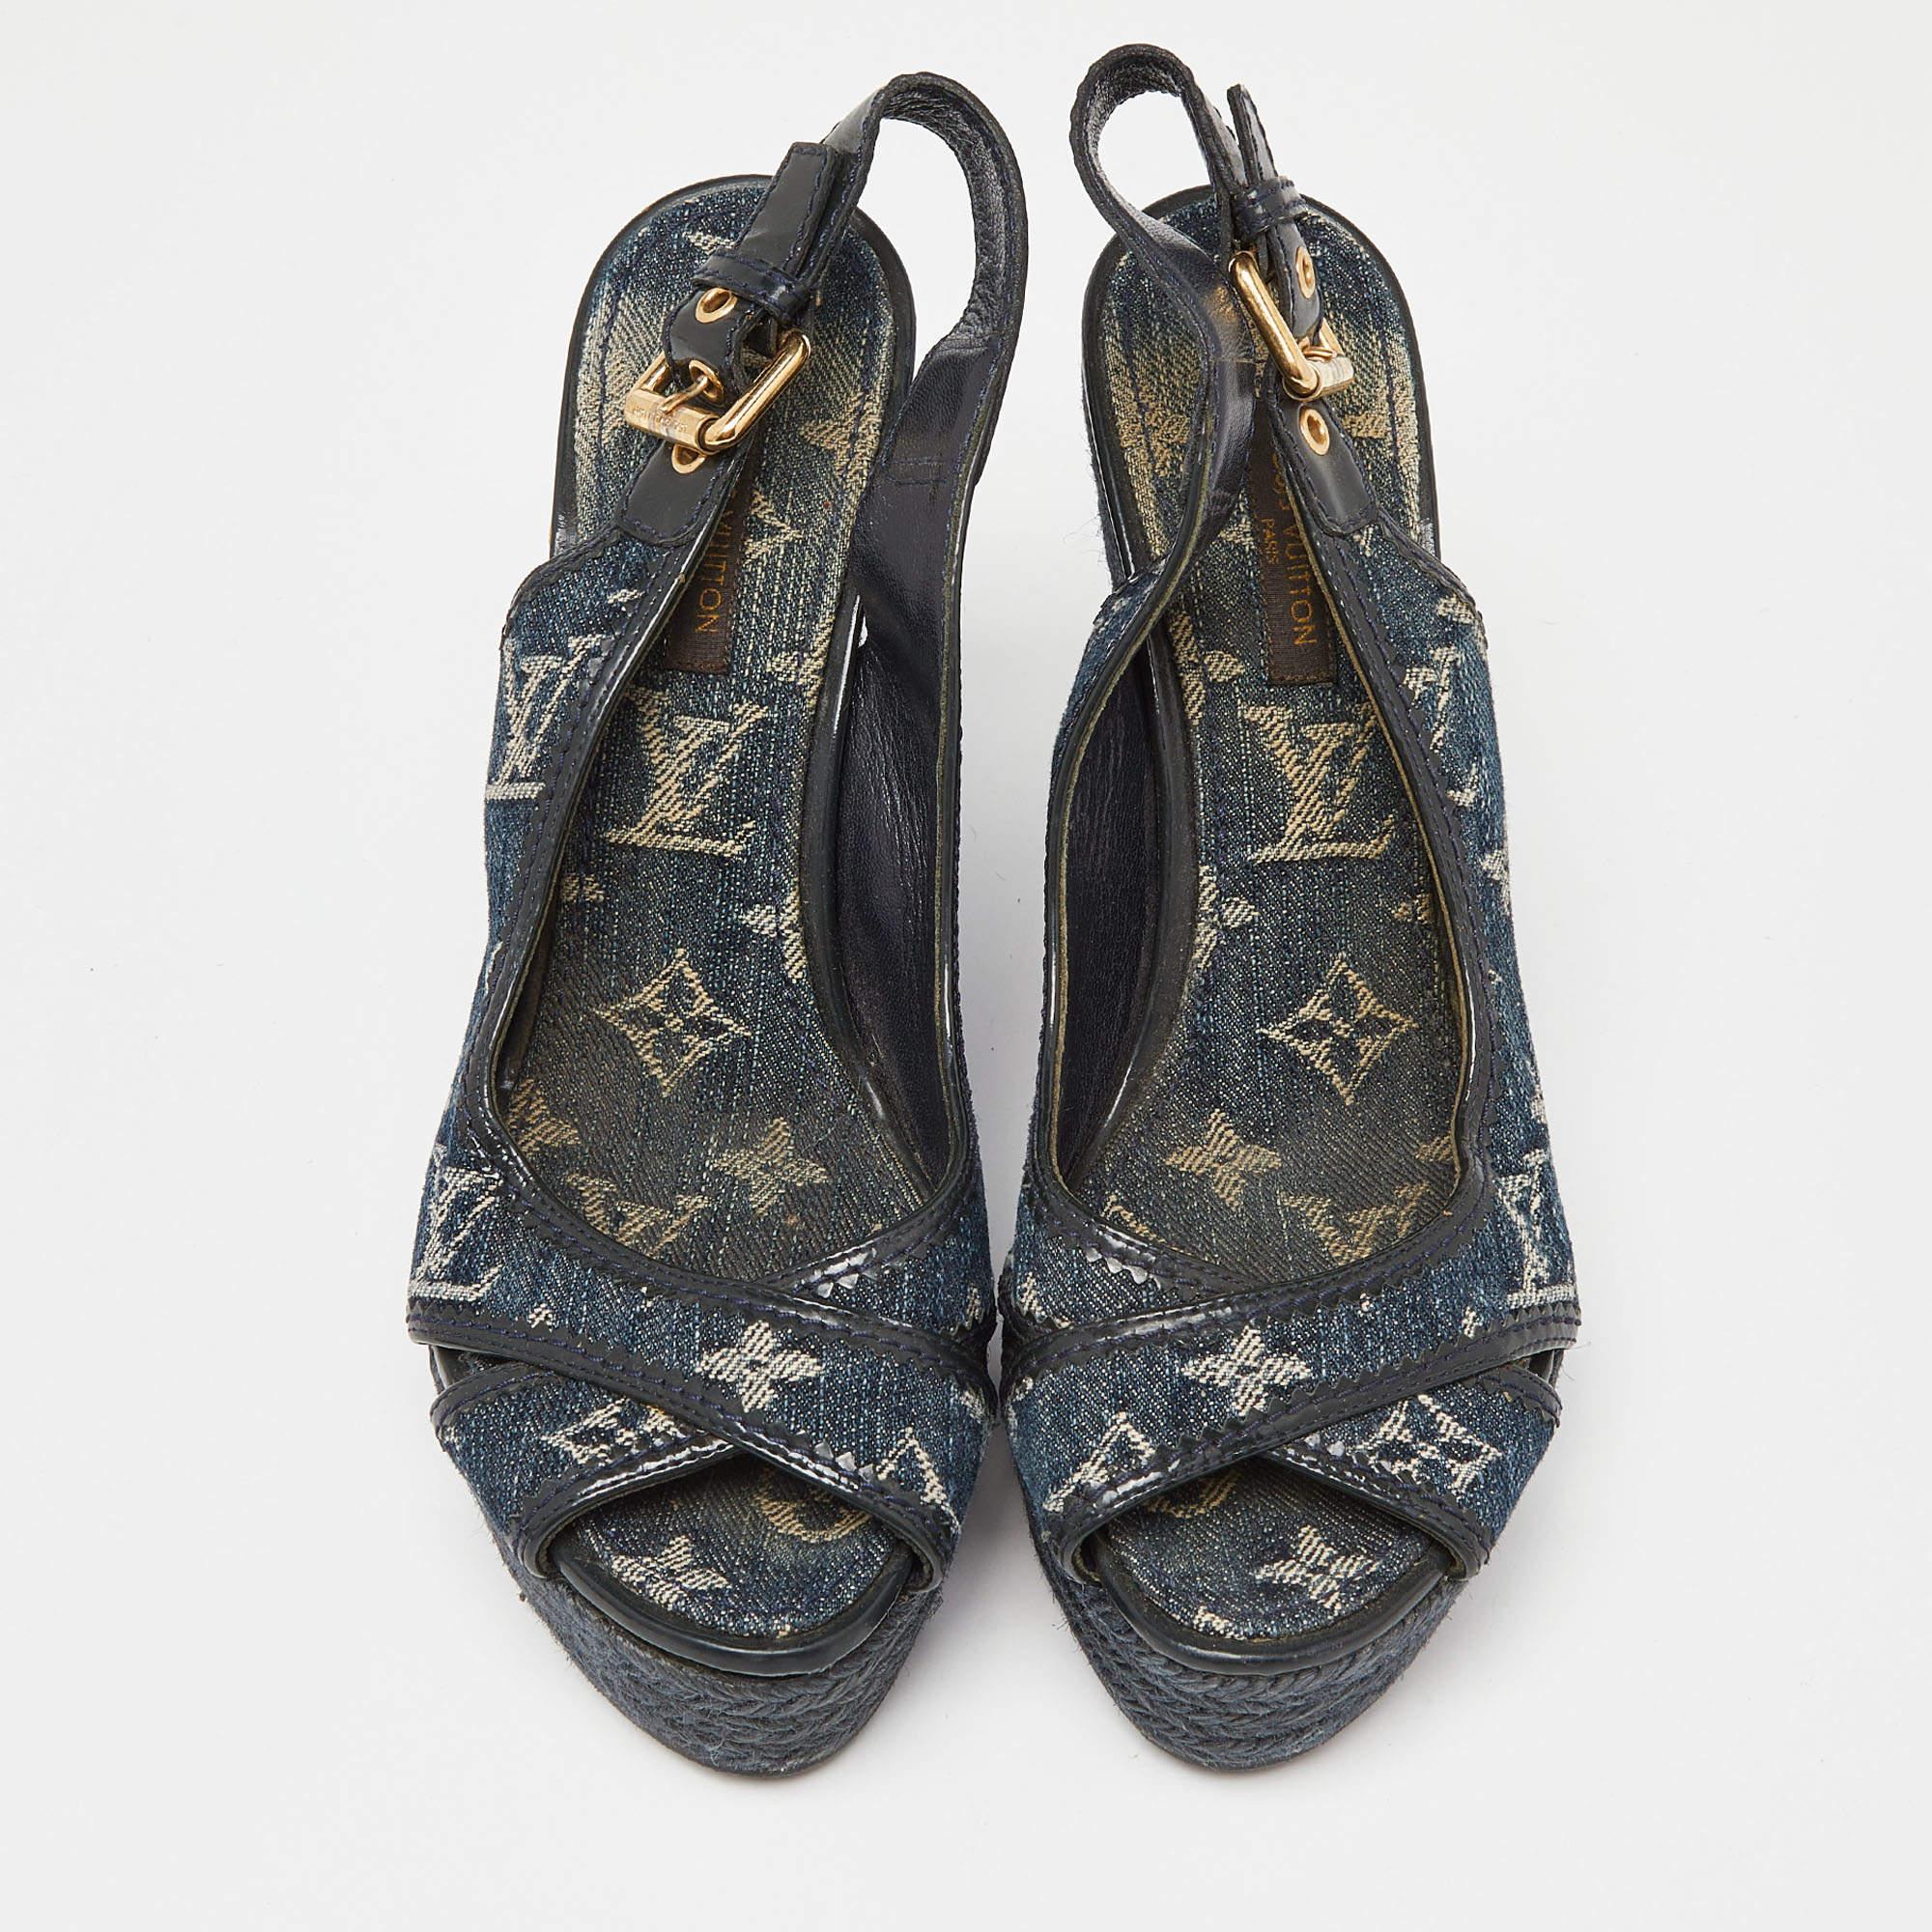 Affichez un style élégant avec cette paire d'escarpins. Ces chaussures élégantes sont fabriquées à partir de matériaux de qualité. Ils sont posés sur des semelles durables et des talons élégants.

